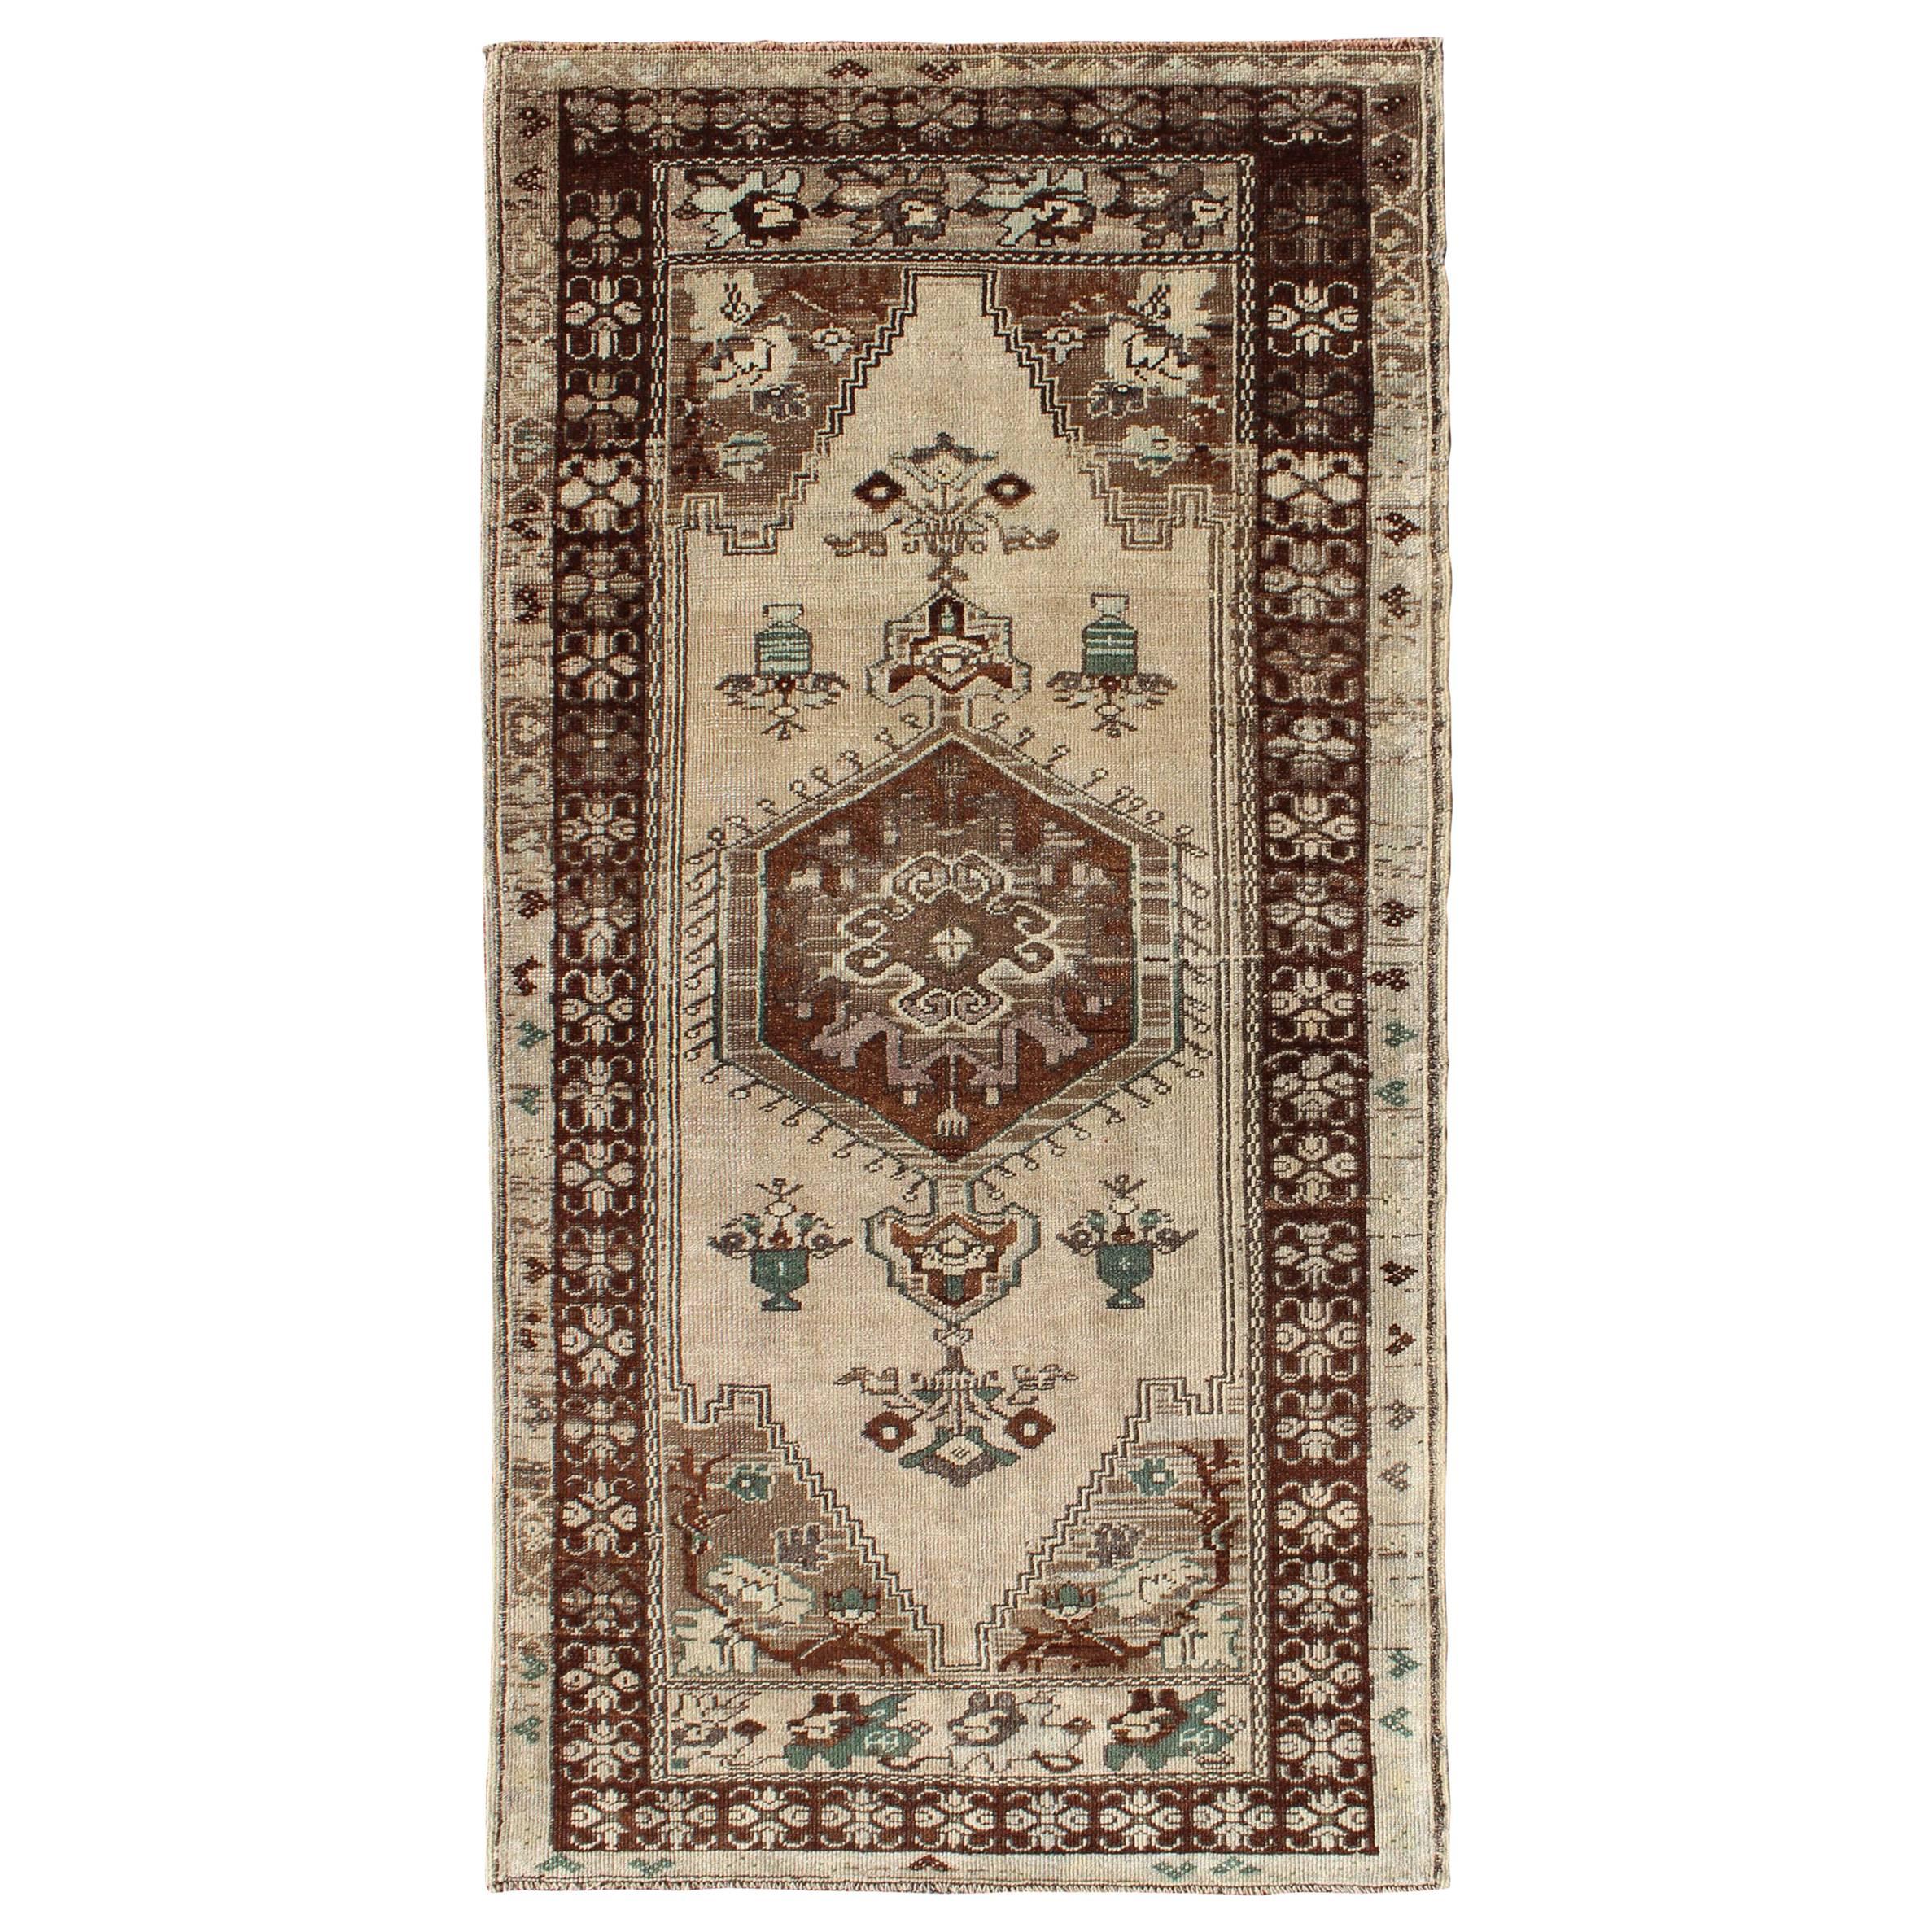 Türkischer Oushak-Teppich im Vintage-Stil mit zentralem Medaillon und floralen Motiven in Braun